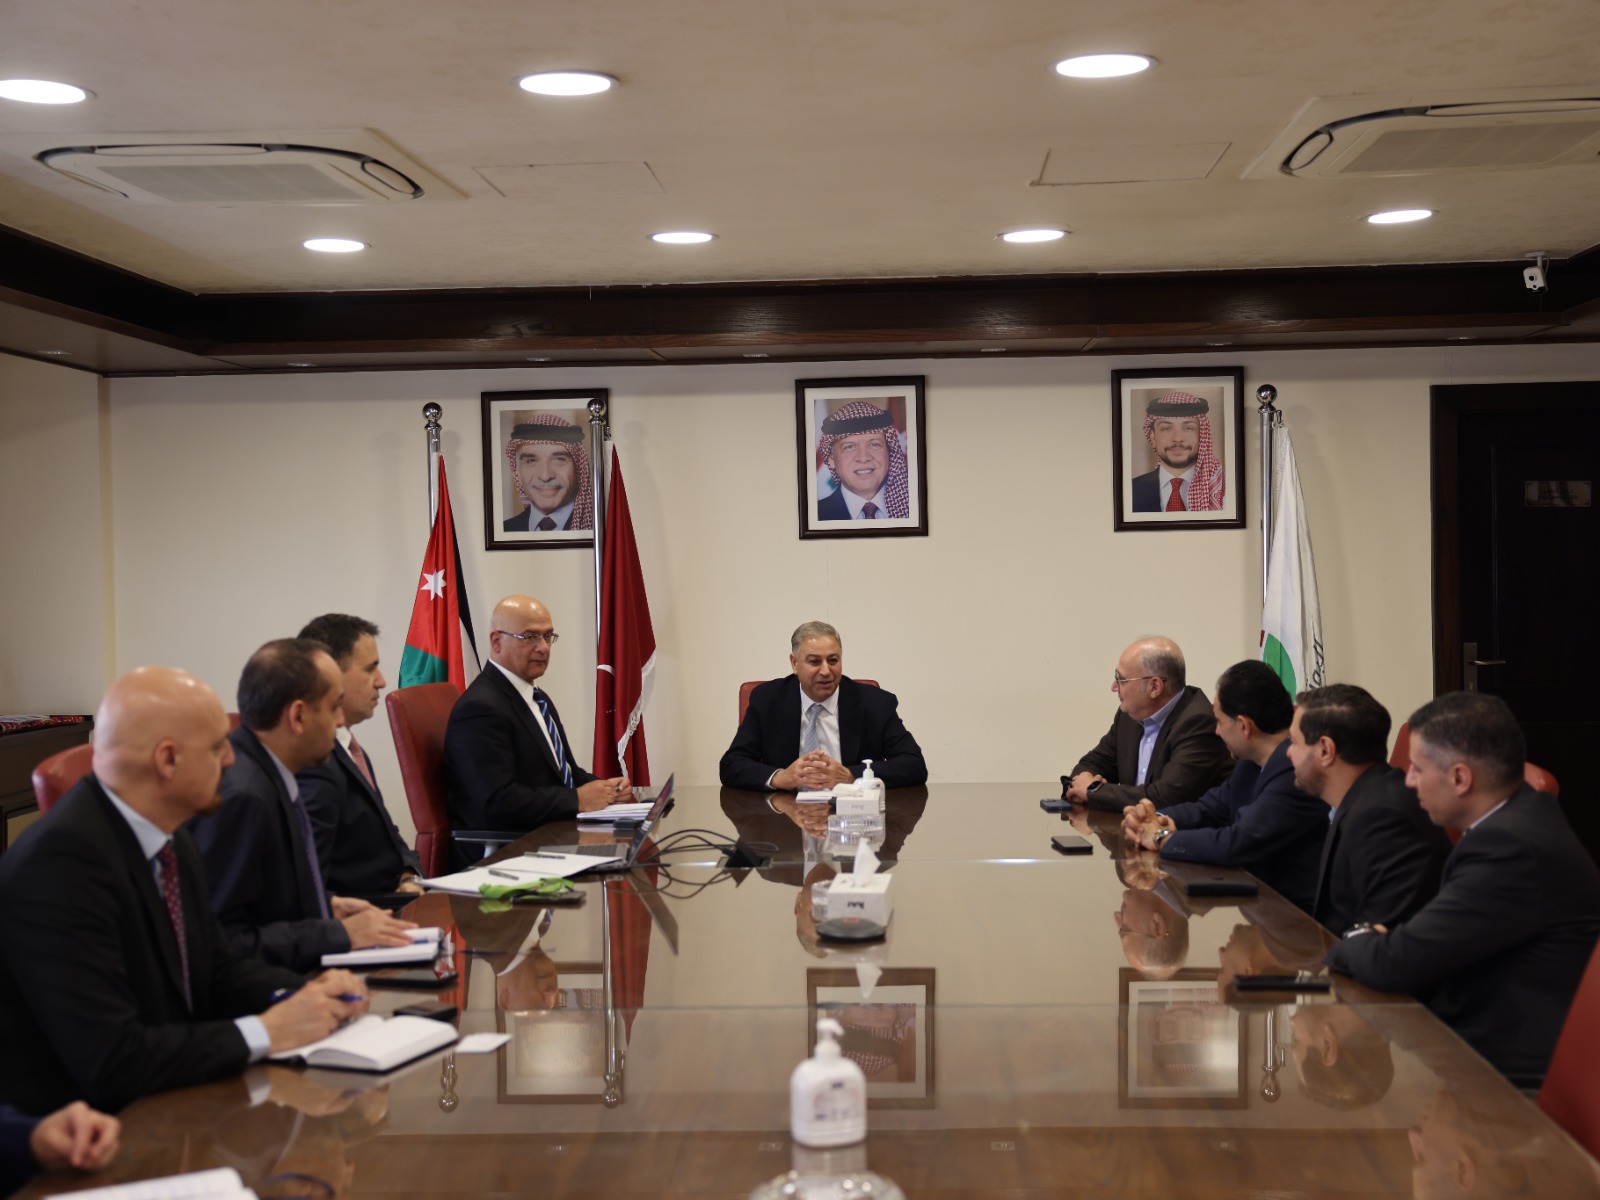 البوتاس العربية تستعرض إنجازاتها وخططها المستقبلية في لقاء مع مجلس إدارة شركة الاستثمارات الحكومية